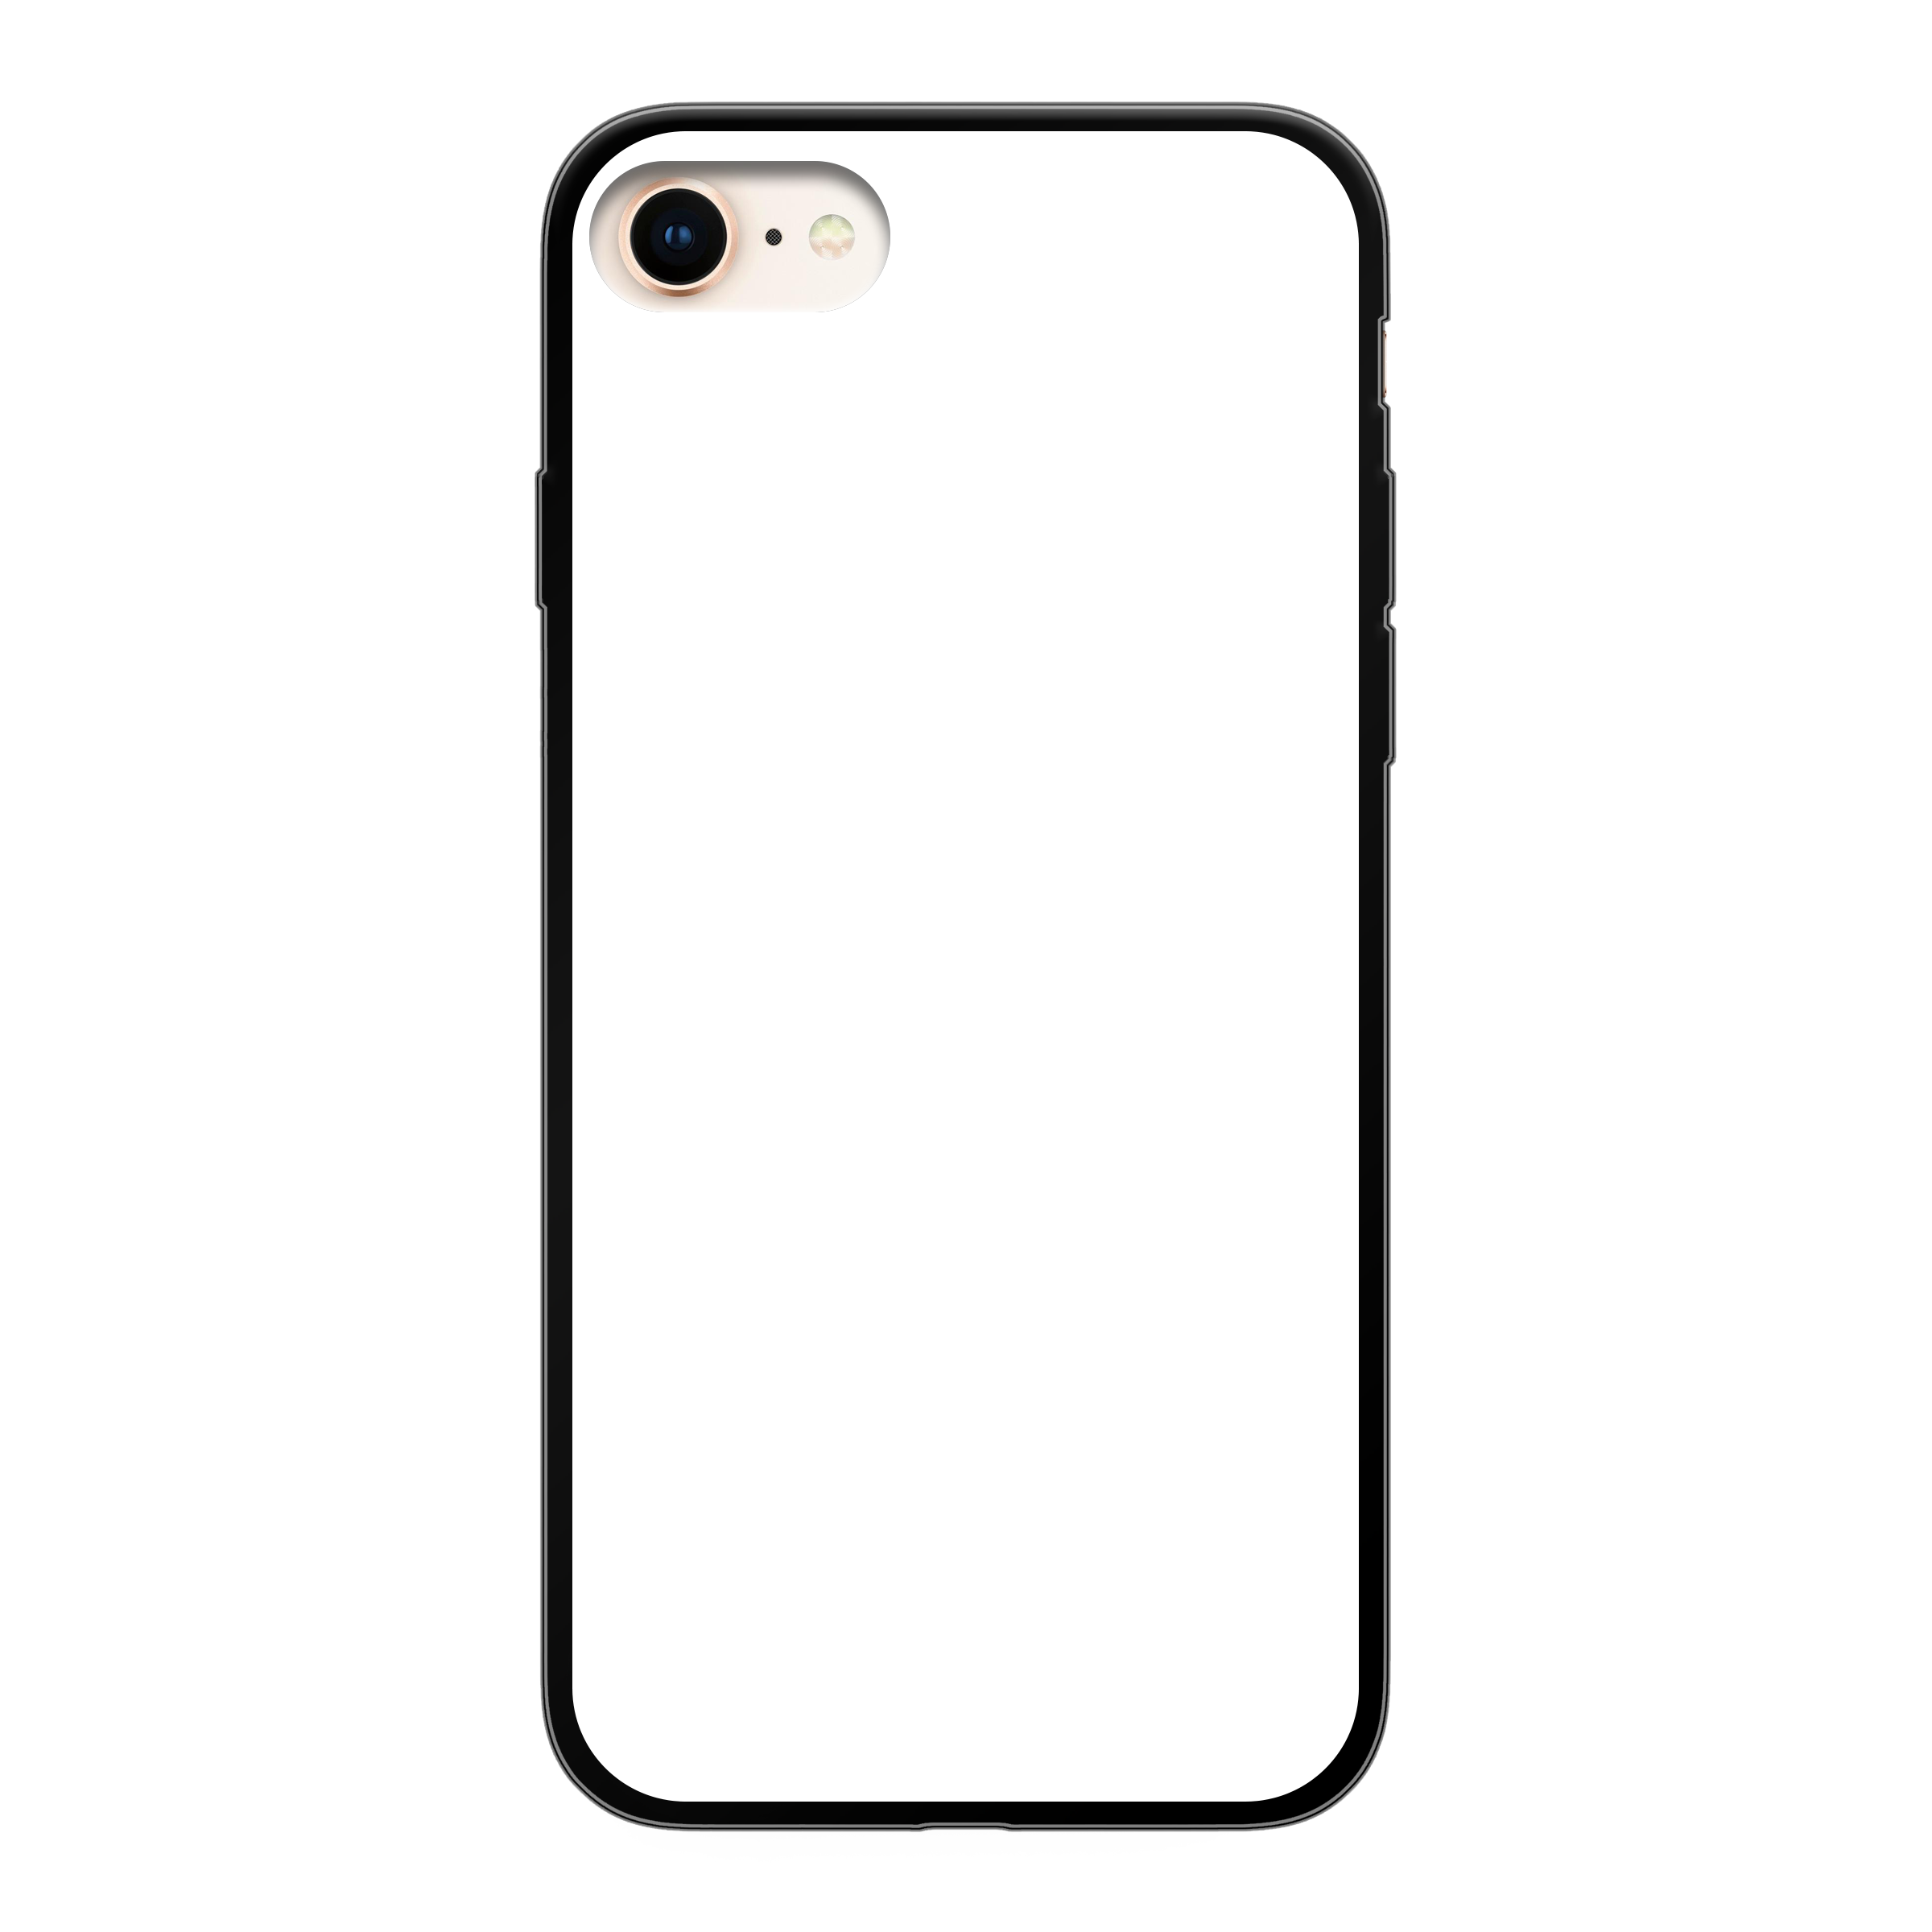 Apple iPhone 7 / 8 / SE (2020) Soft case (back printed, black)